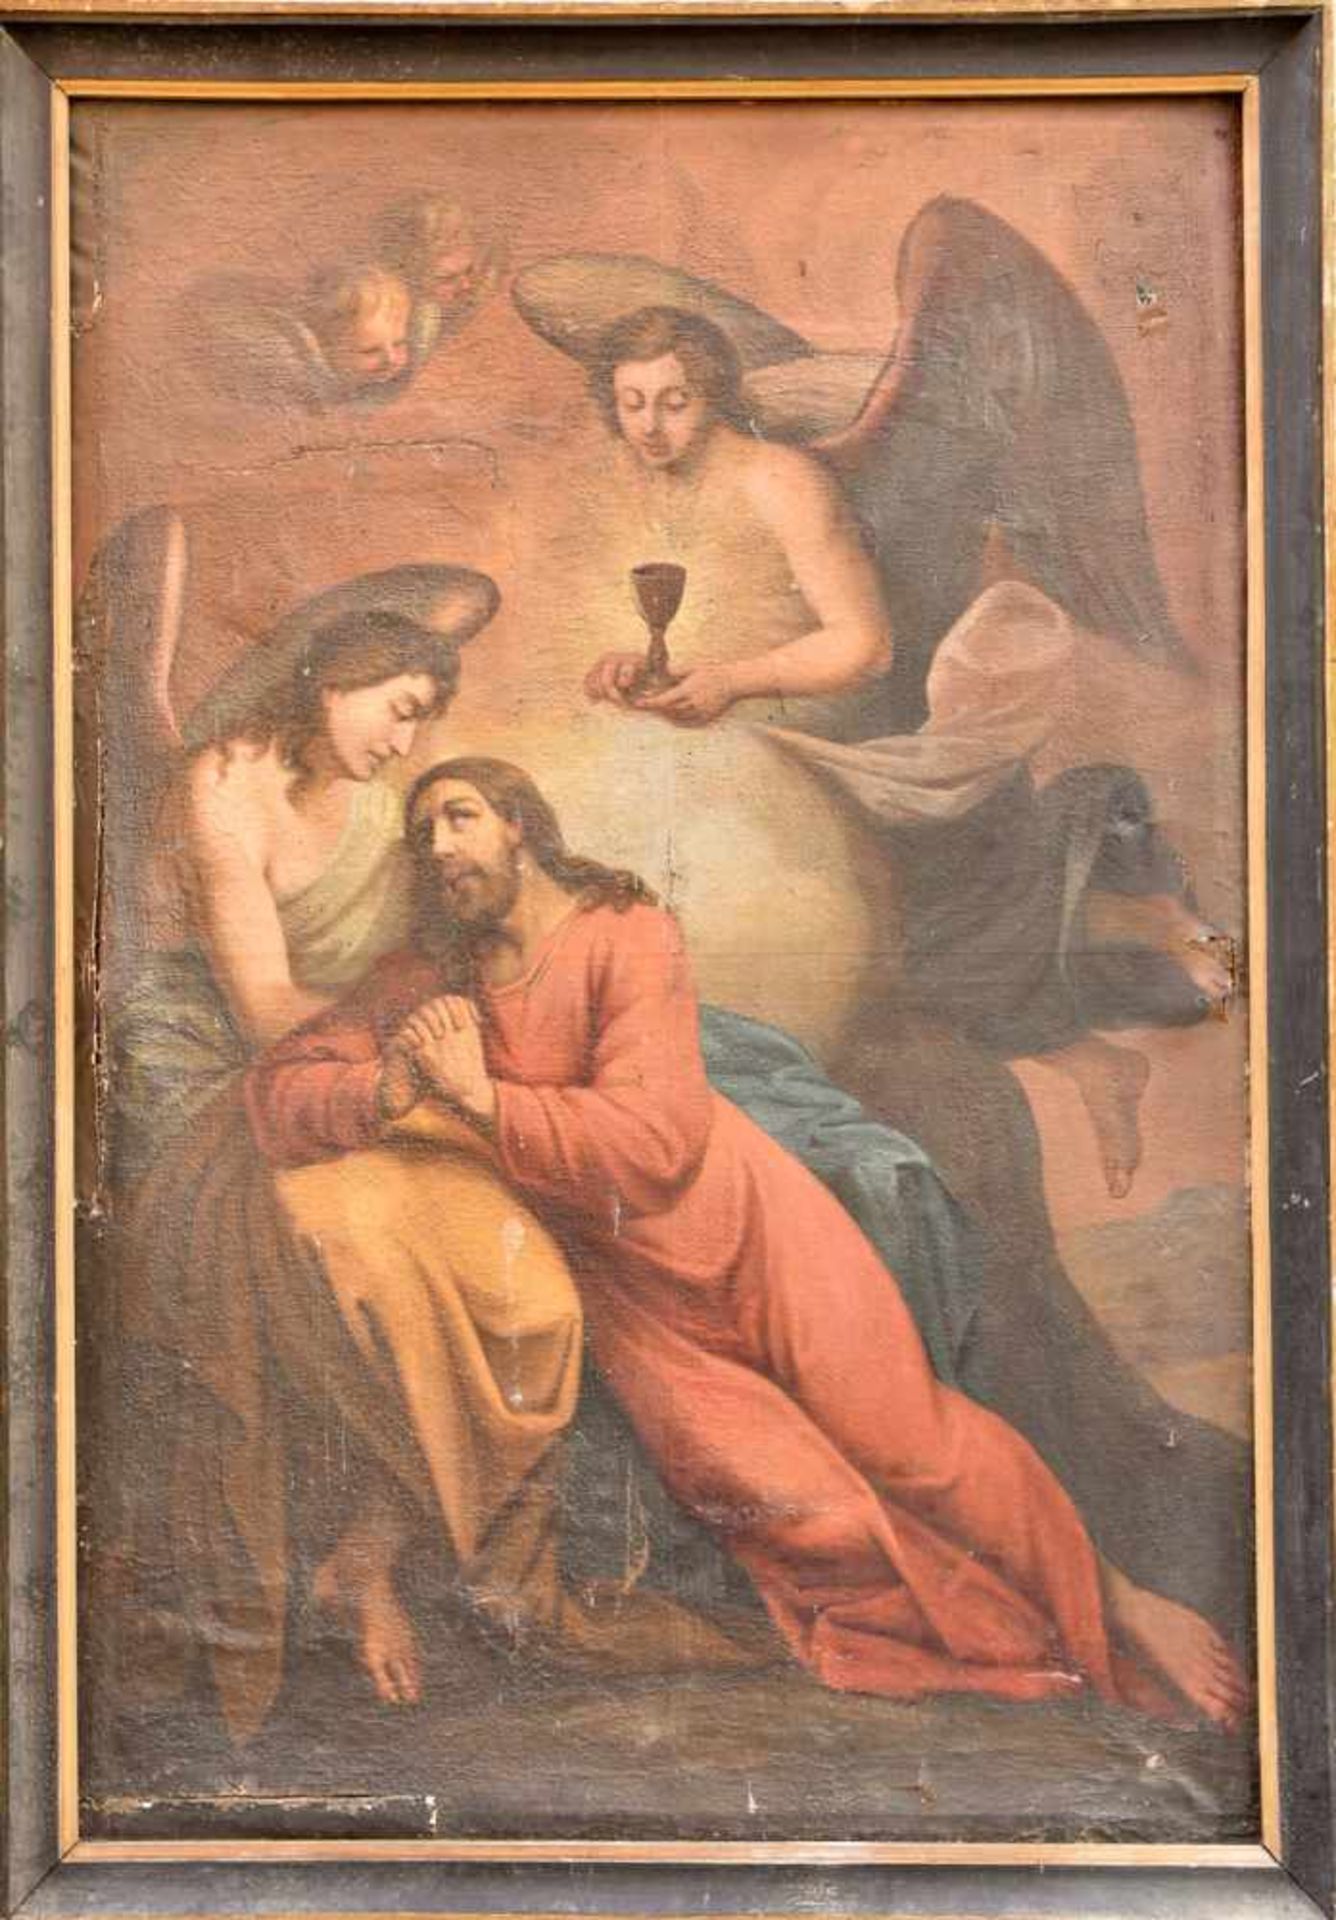 UNBEKANNTER KÜNSTLER, " Jesus im Garten Gethsemane - Am Abend vor der Passion", 19. Jh. An vielen